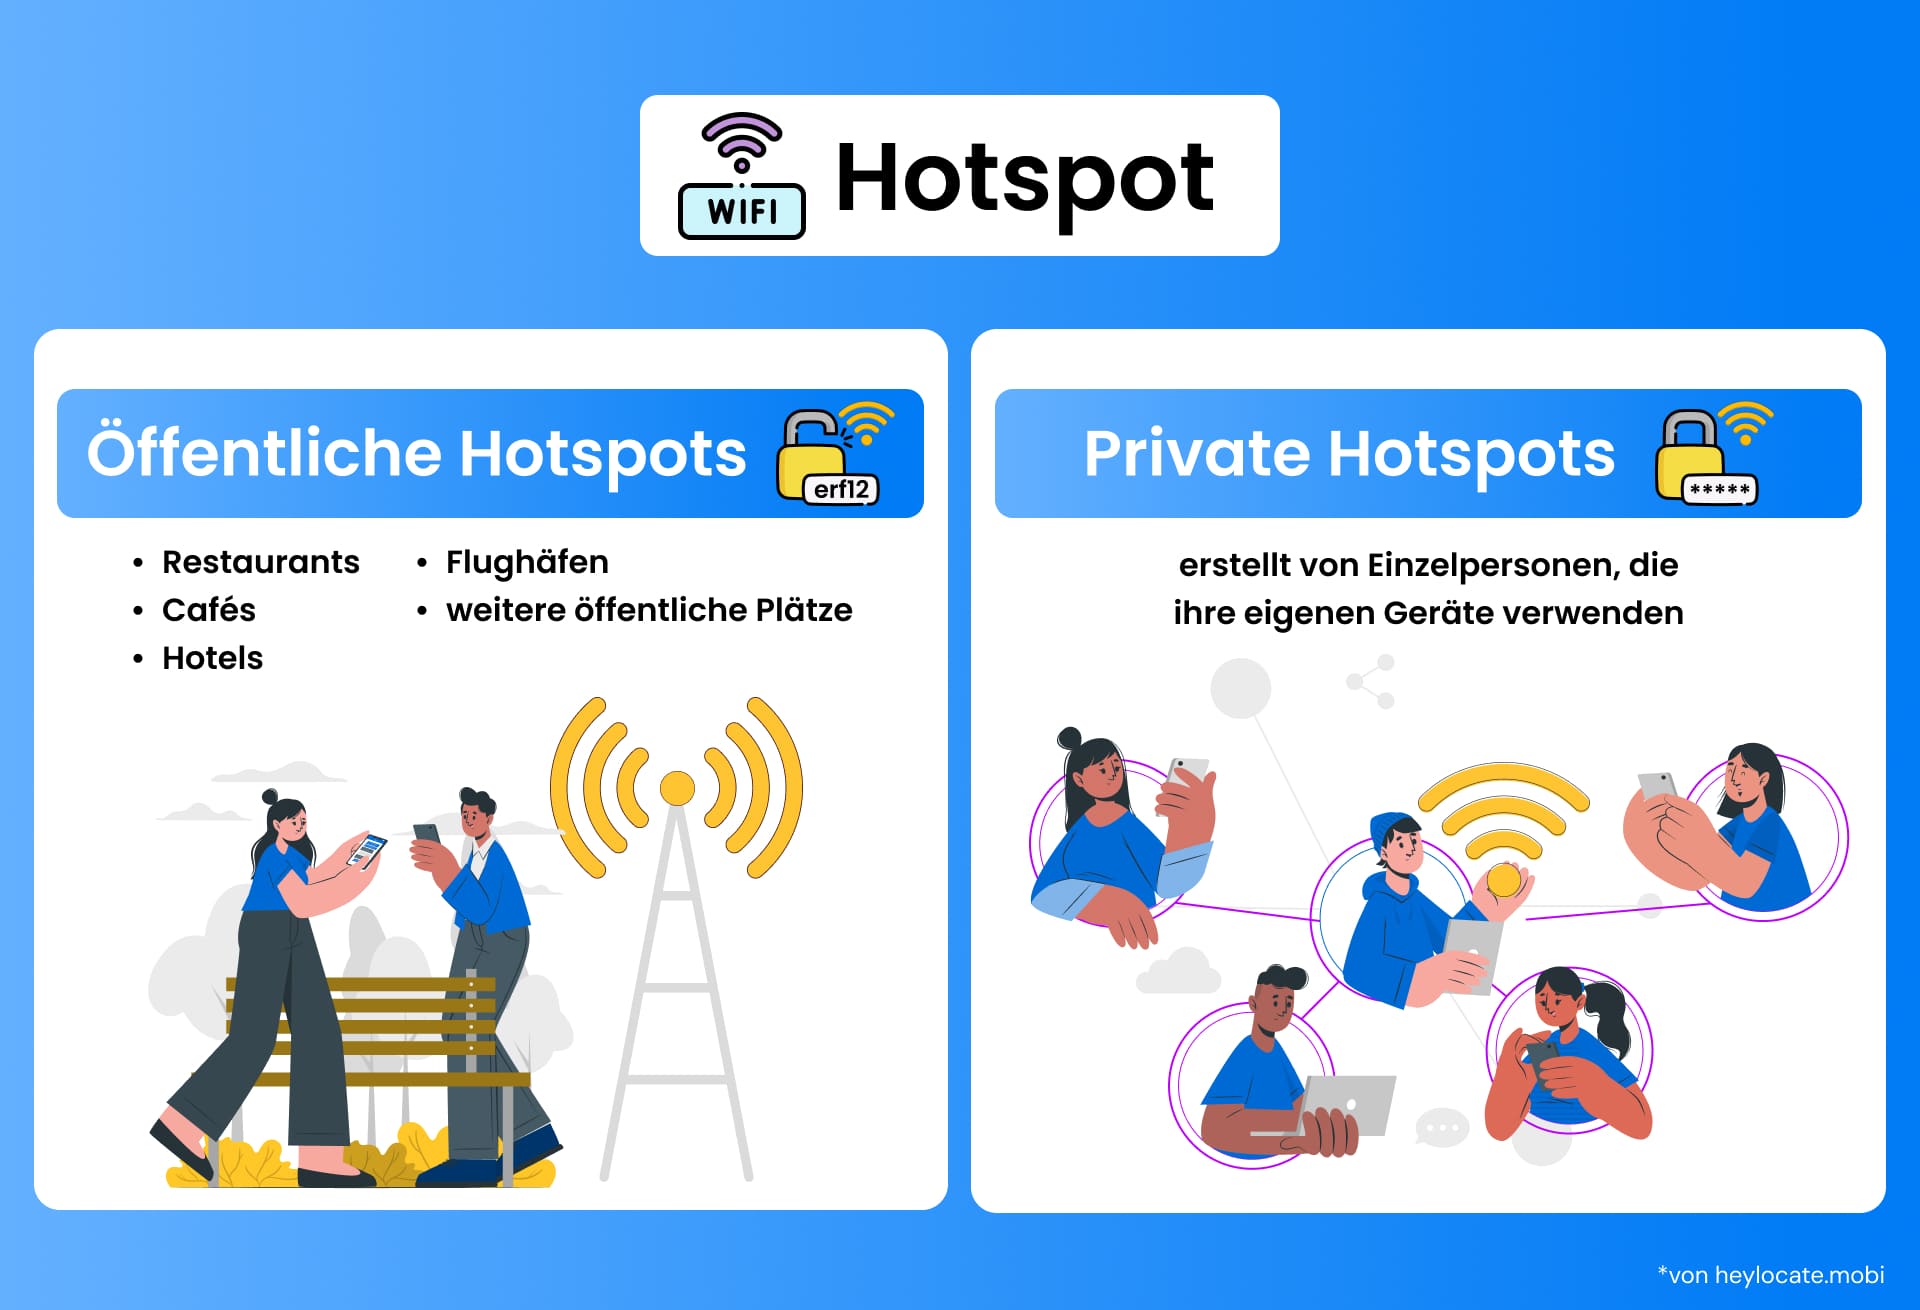 Illustration zur Gegenüberstellung von öffentlichen Hotspots an Orten wie Cafés und privaten Hotspots, die von Einzelpersonen auf ihren Geräten eingerichtet werden.